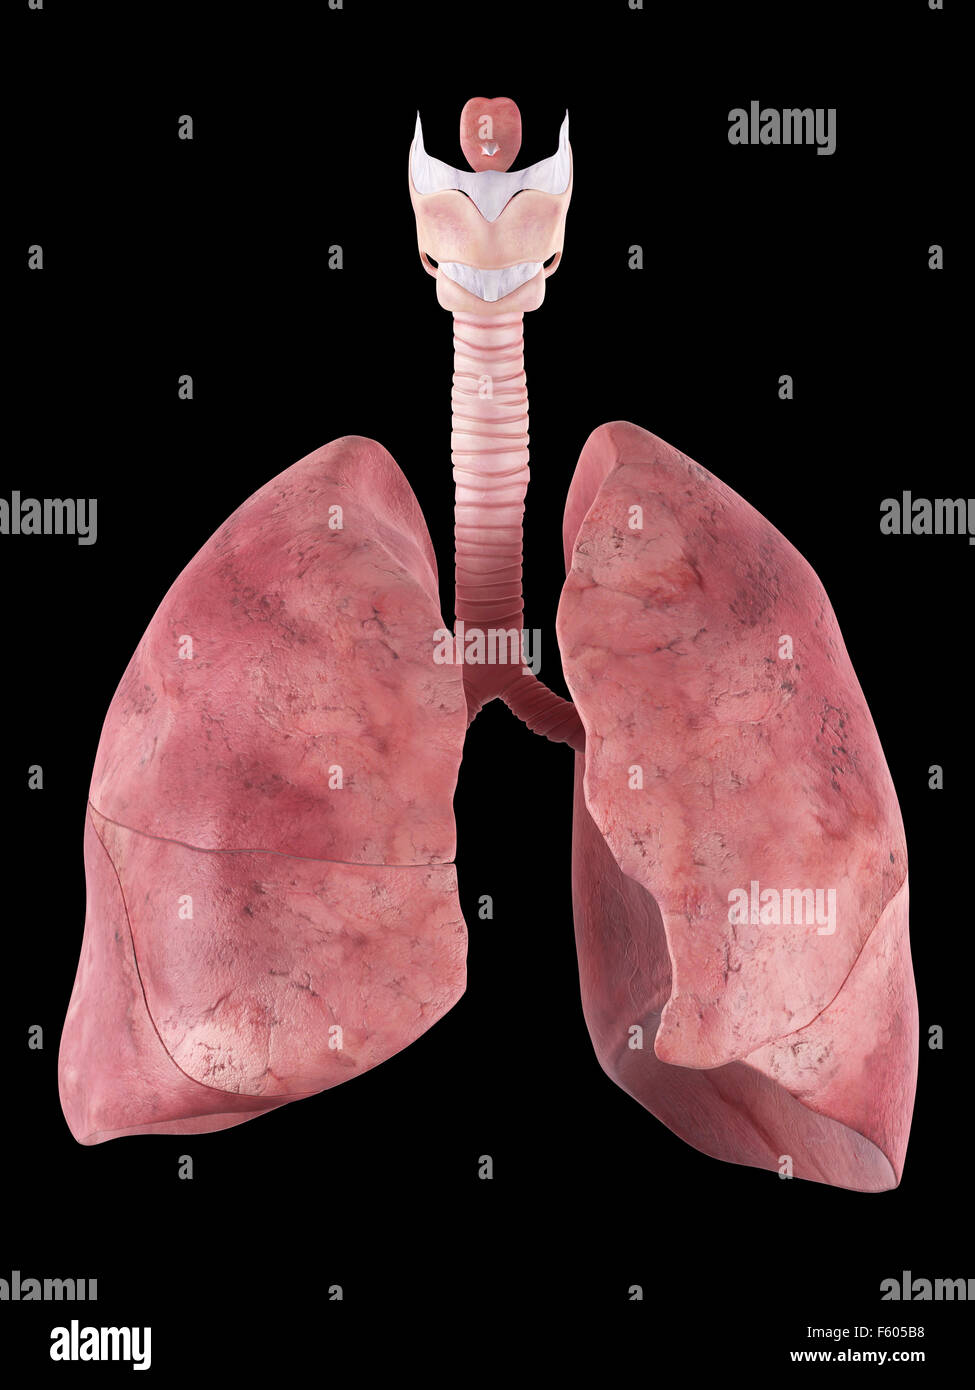 Dal punto di vista medico illustrazione accurata del polmone umano Foto Stock